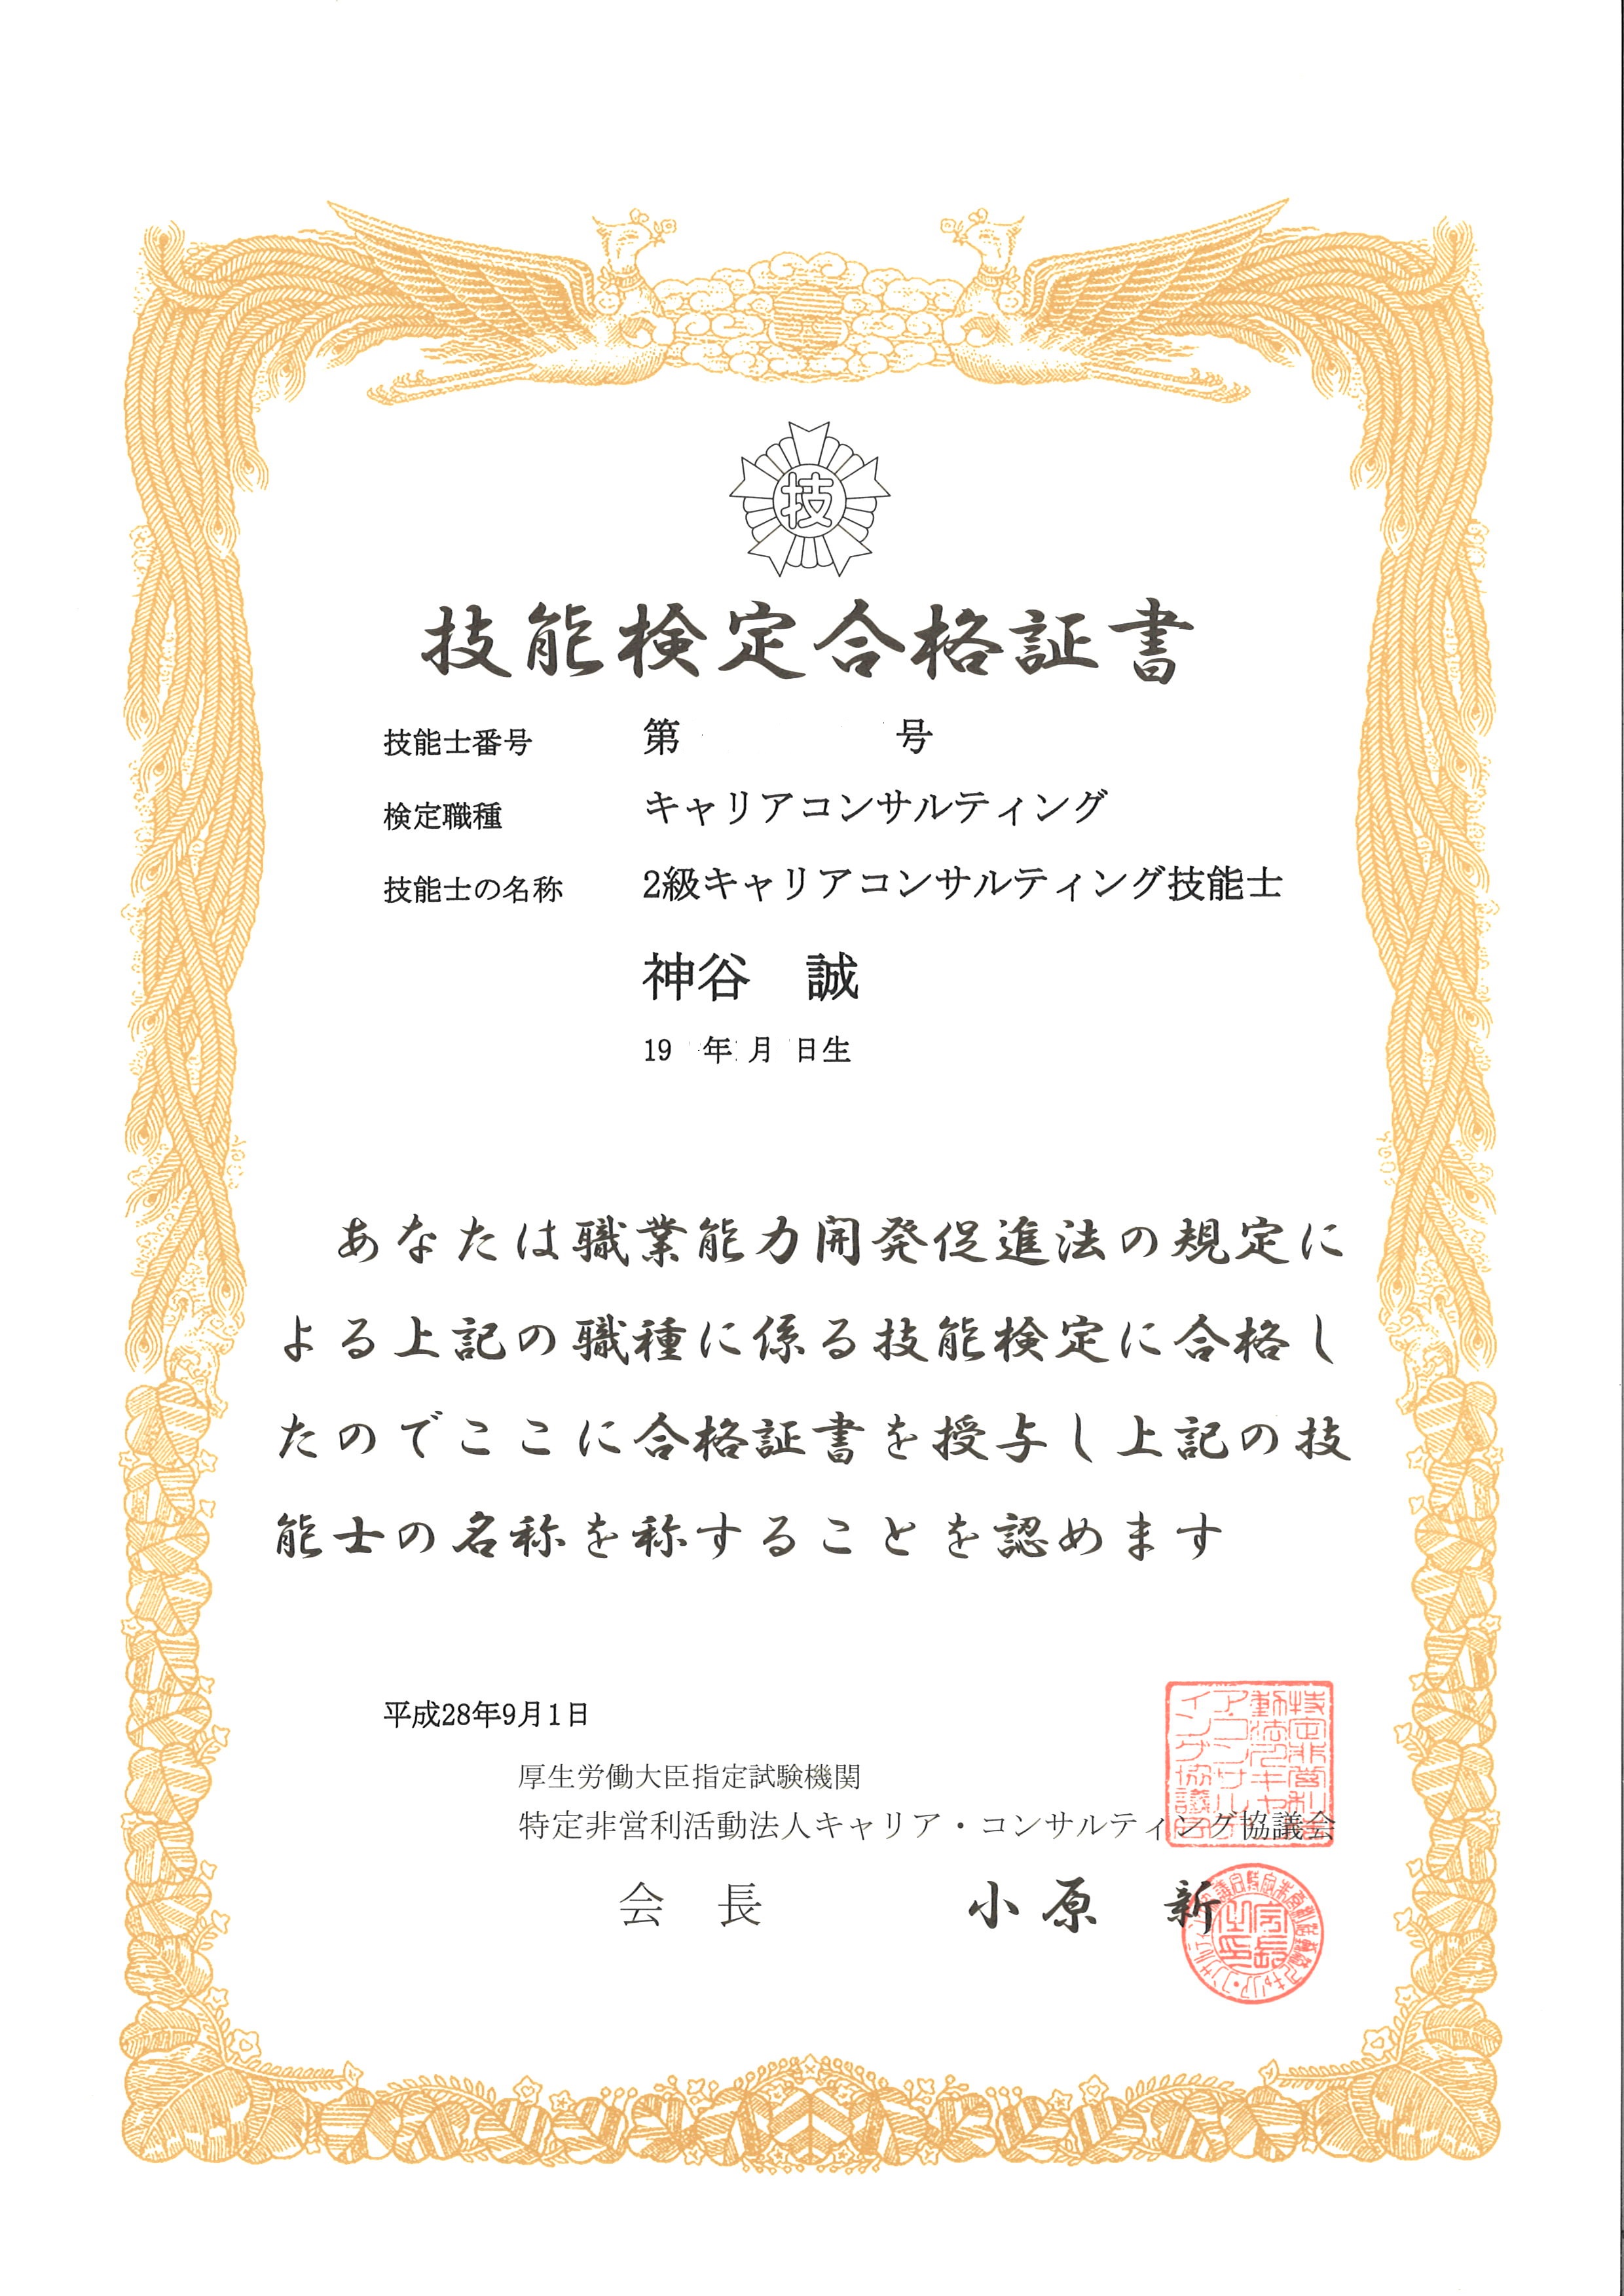 第134歩 2級キャリアコンサルティング技能士 合格しました 九州福岡天神 名古屋刈谷の転職 就職 求人はスタッフエージェント